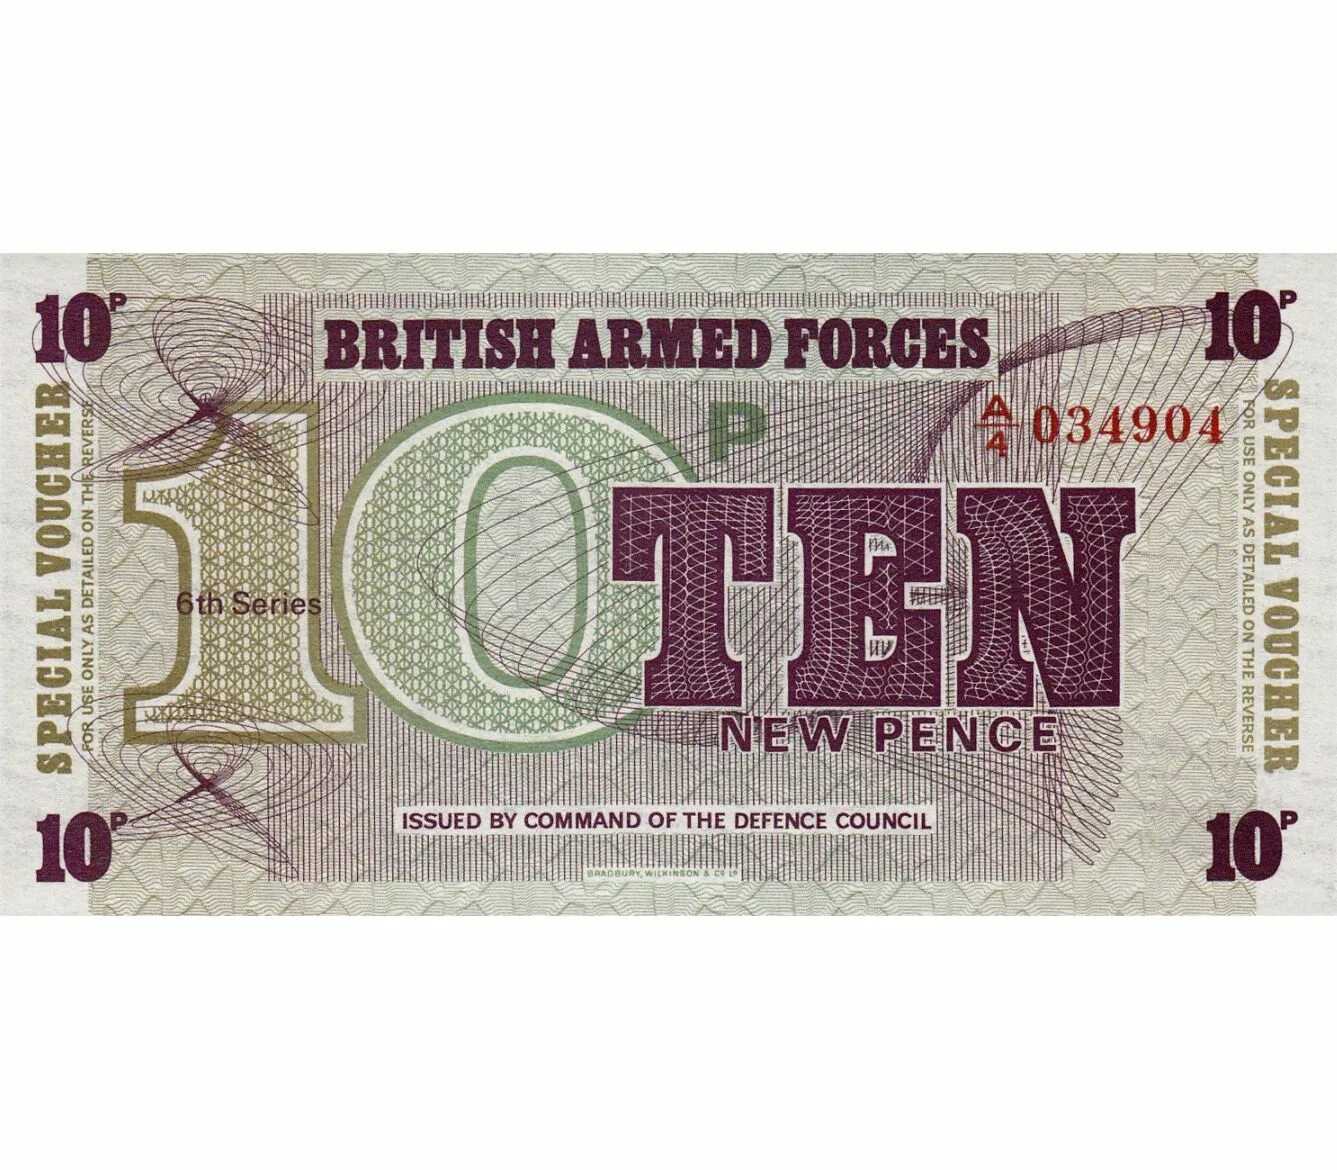 New 10 now. 10 Новых пенсов. 10 Пенсов банкнота. Великобритания 10 новых пенсов. British Armed Forces банкнота.